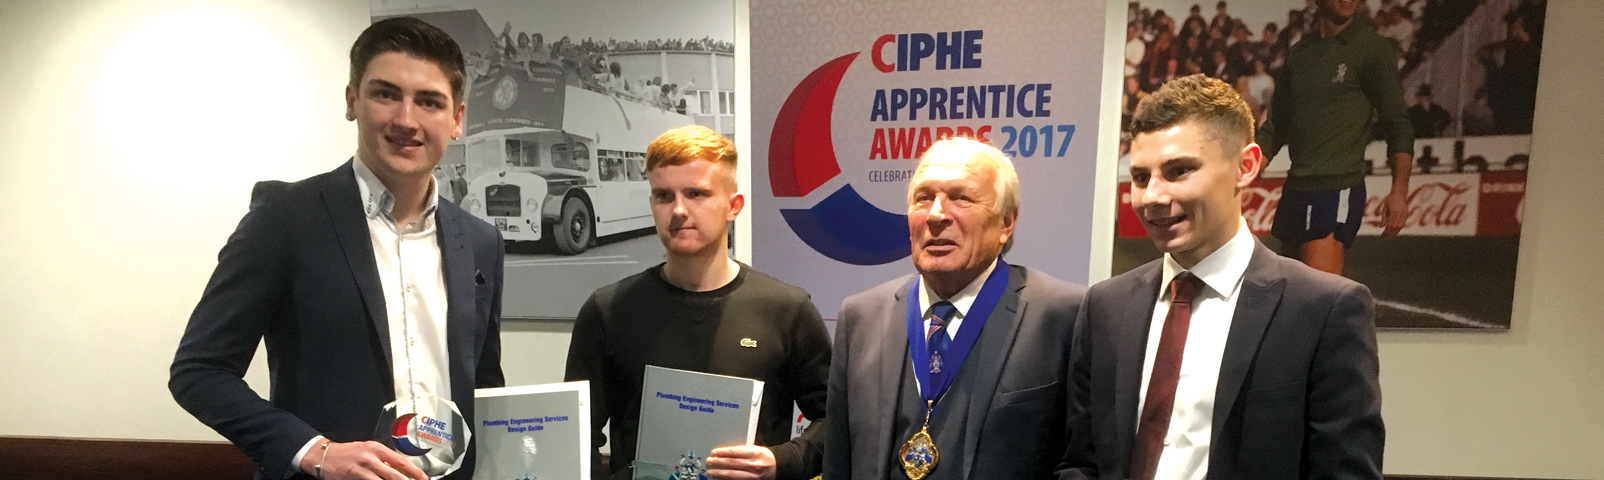 Apprentice award winners